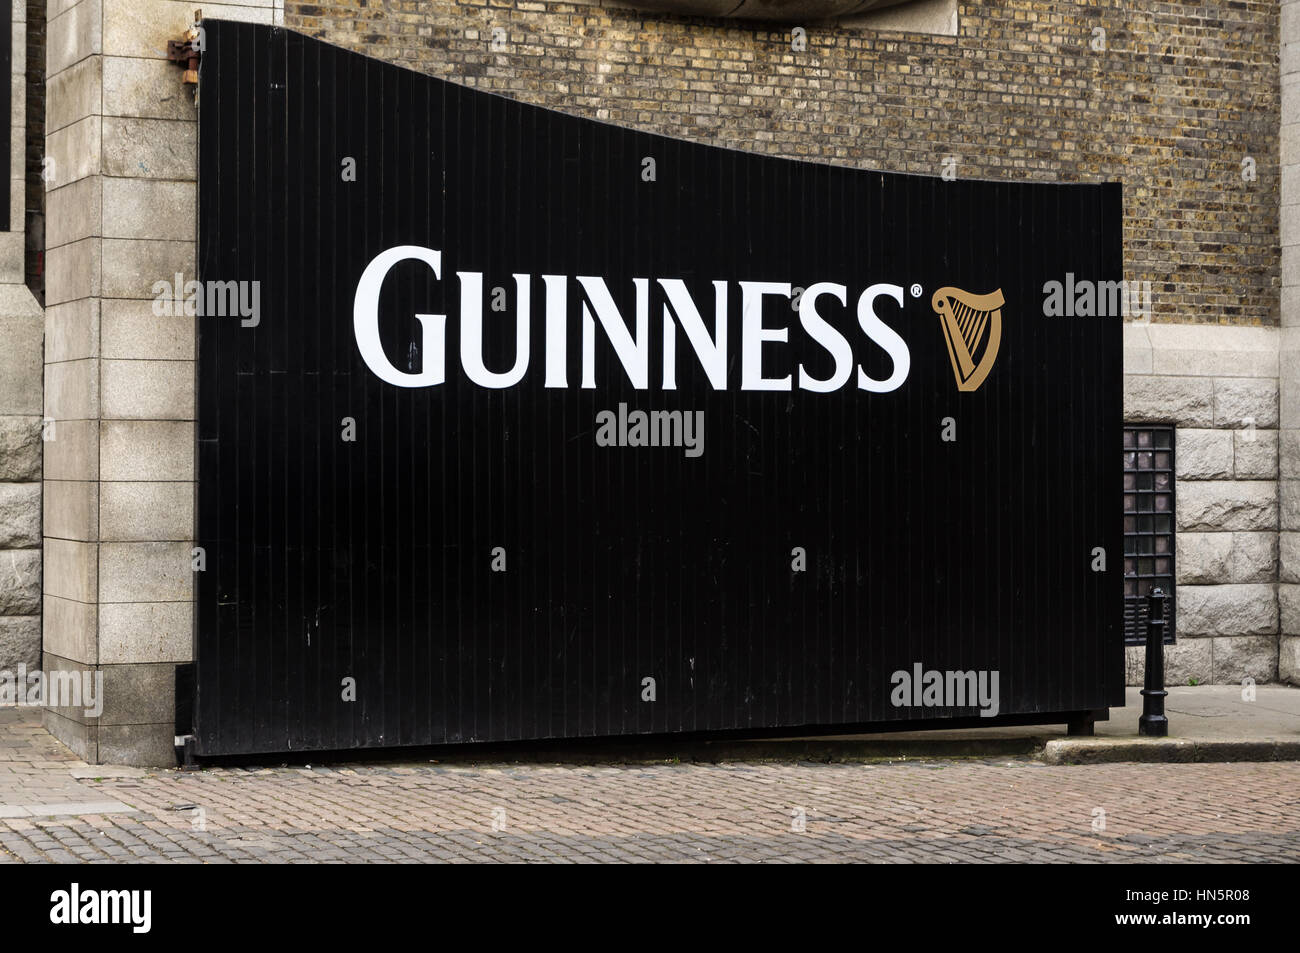 DUBLIN, IRLANDE - 15 avril 2015 : La porte de l'Entrepôt Guinness Brewery Visitor attraction dans le St James Gate de Dublin Banque D'Images